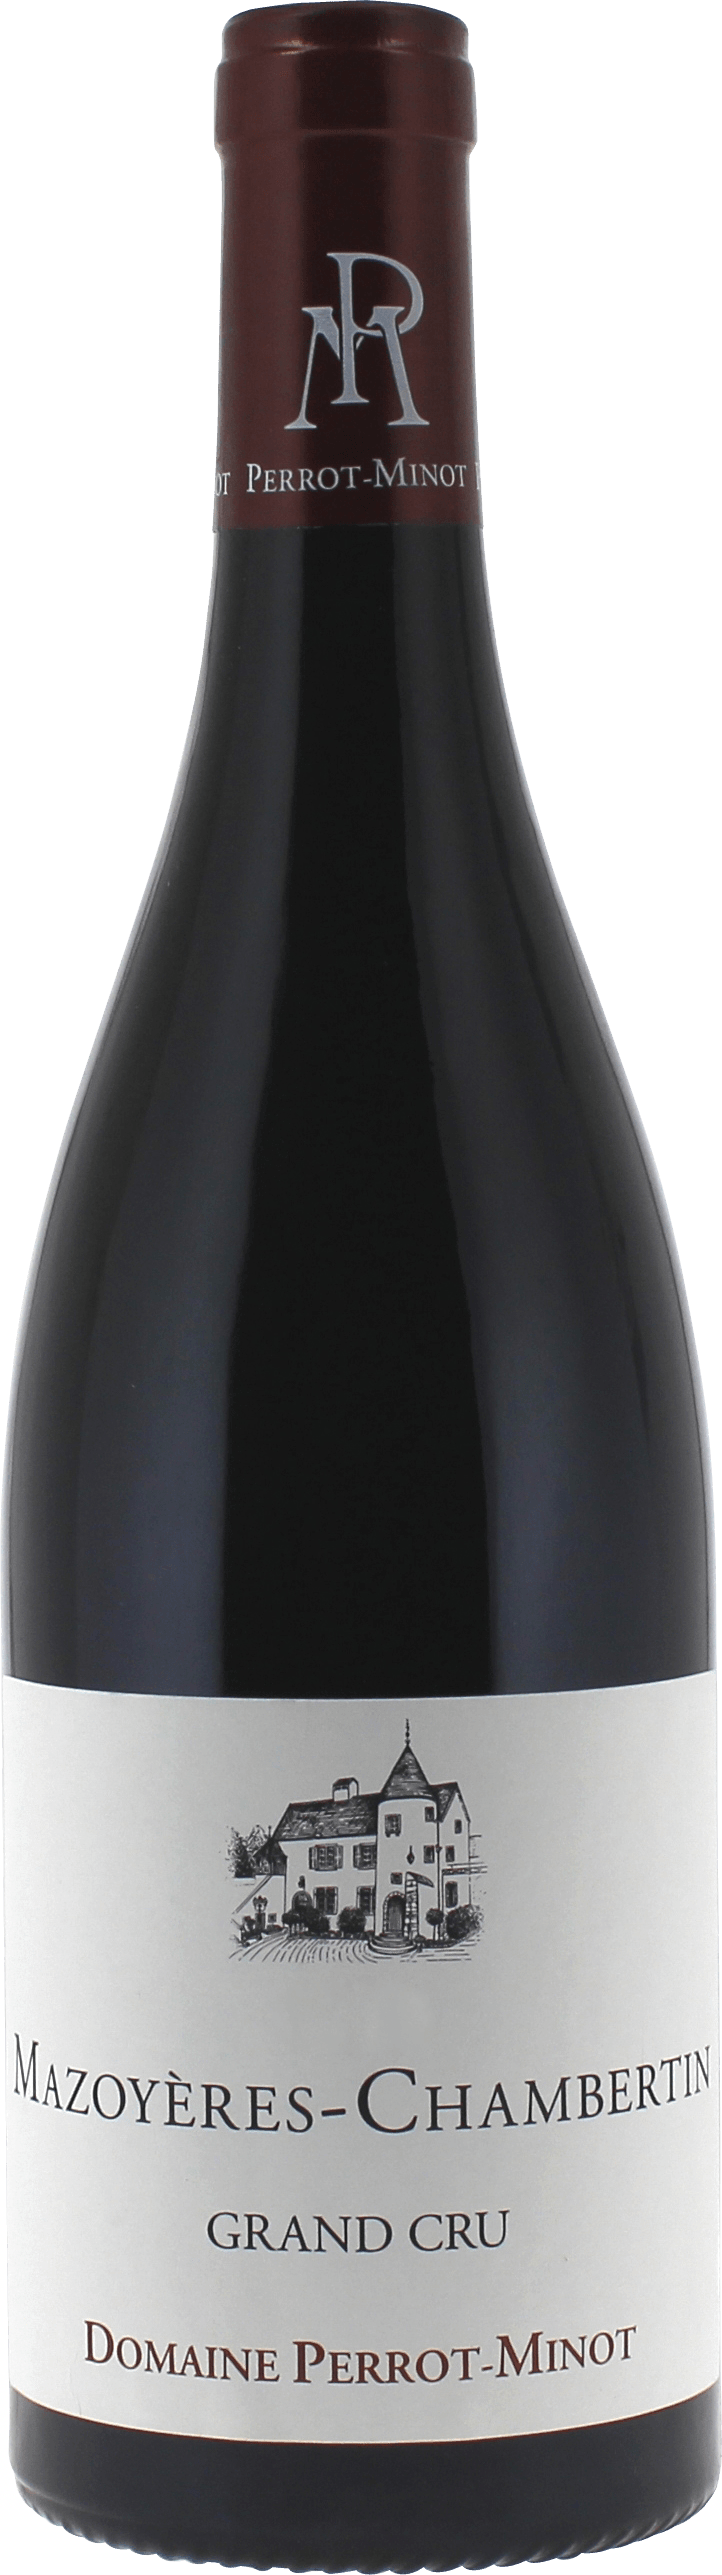 Mazoyres chambertin grand cru 2017 Domaine PERROT MINOT, Bourgogne rouge